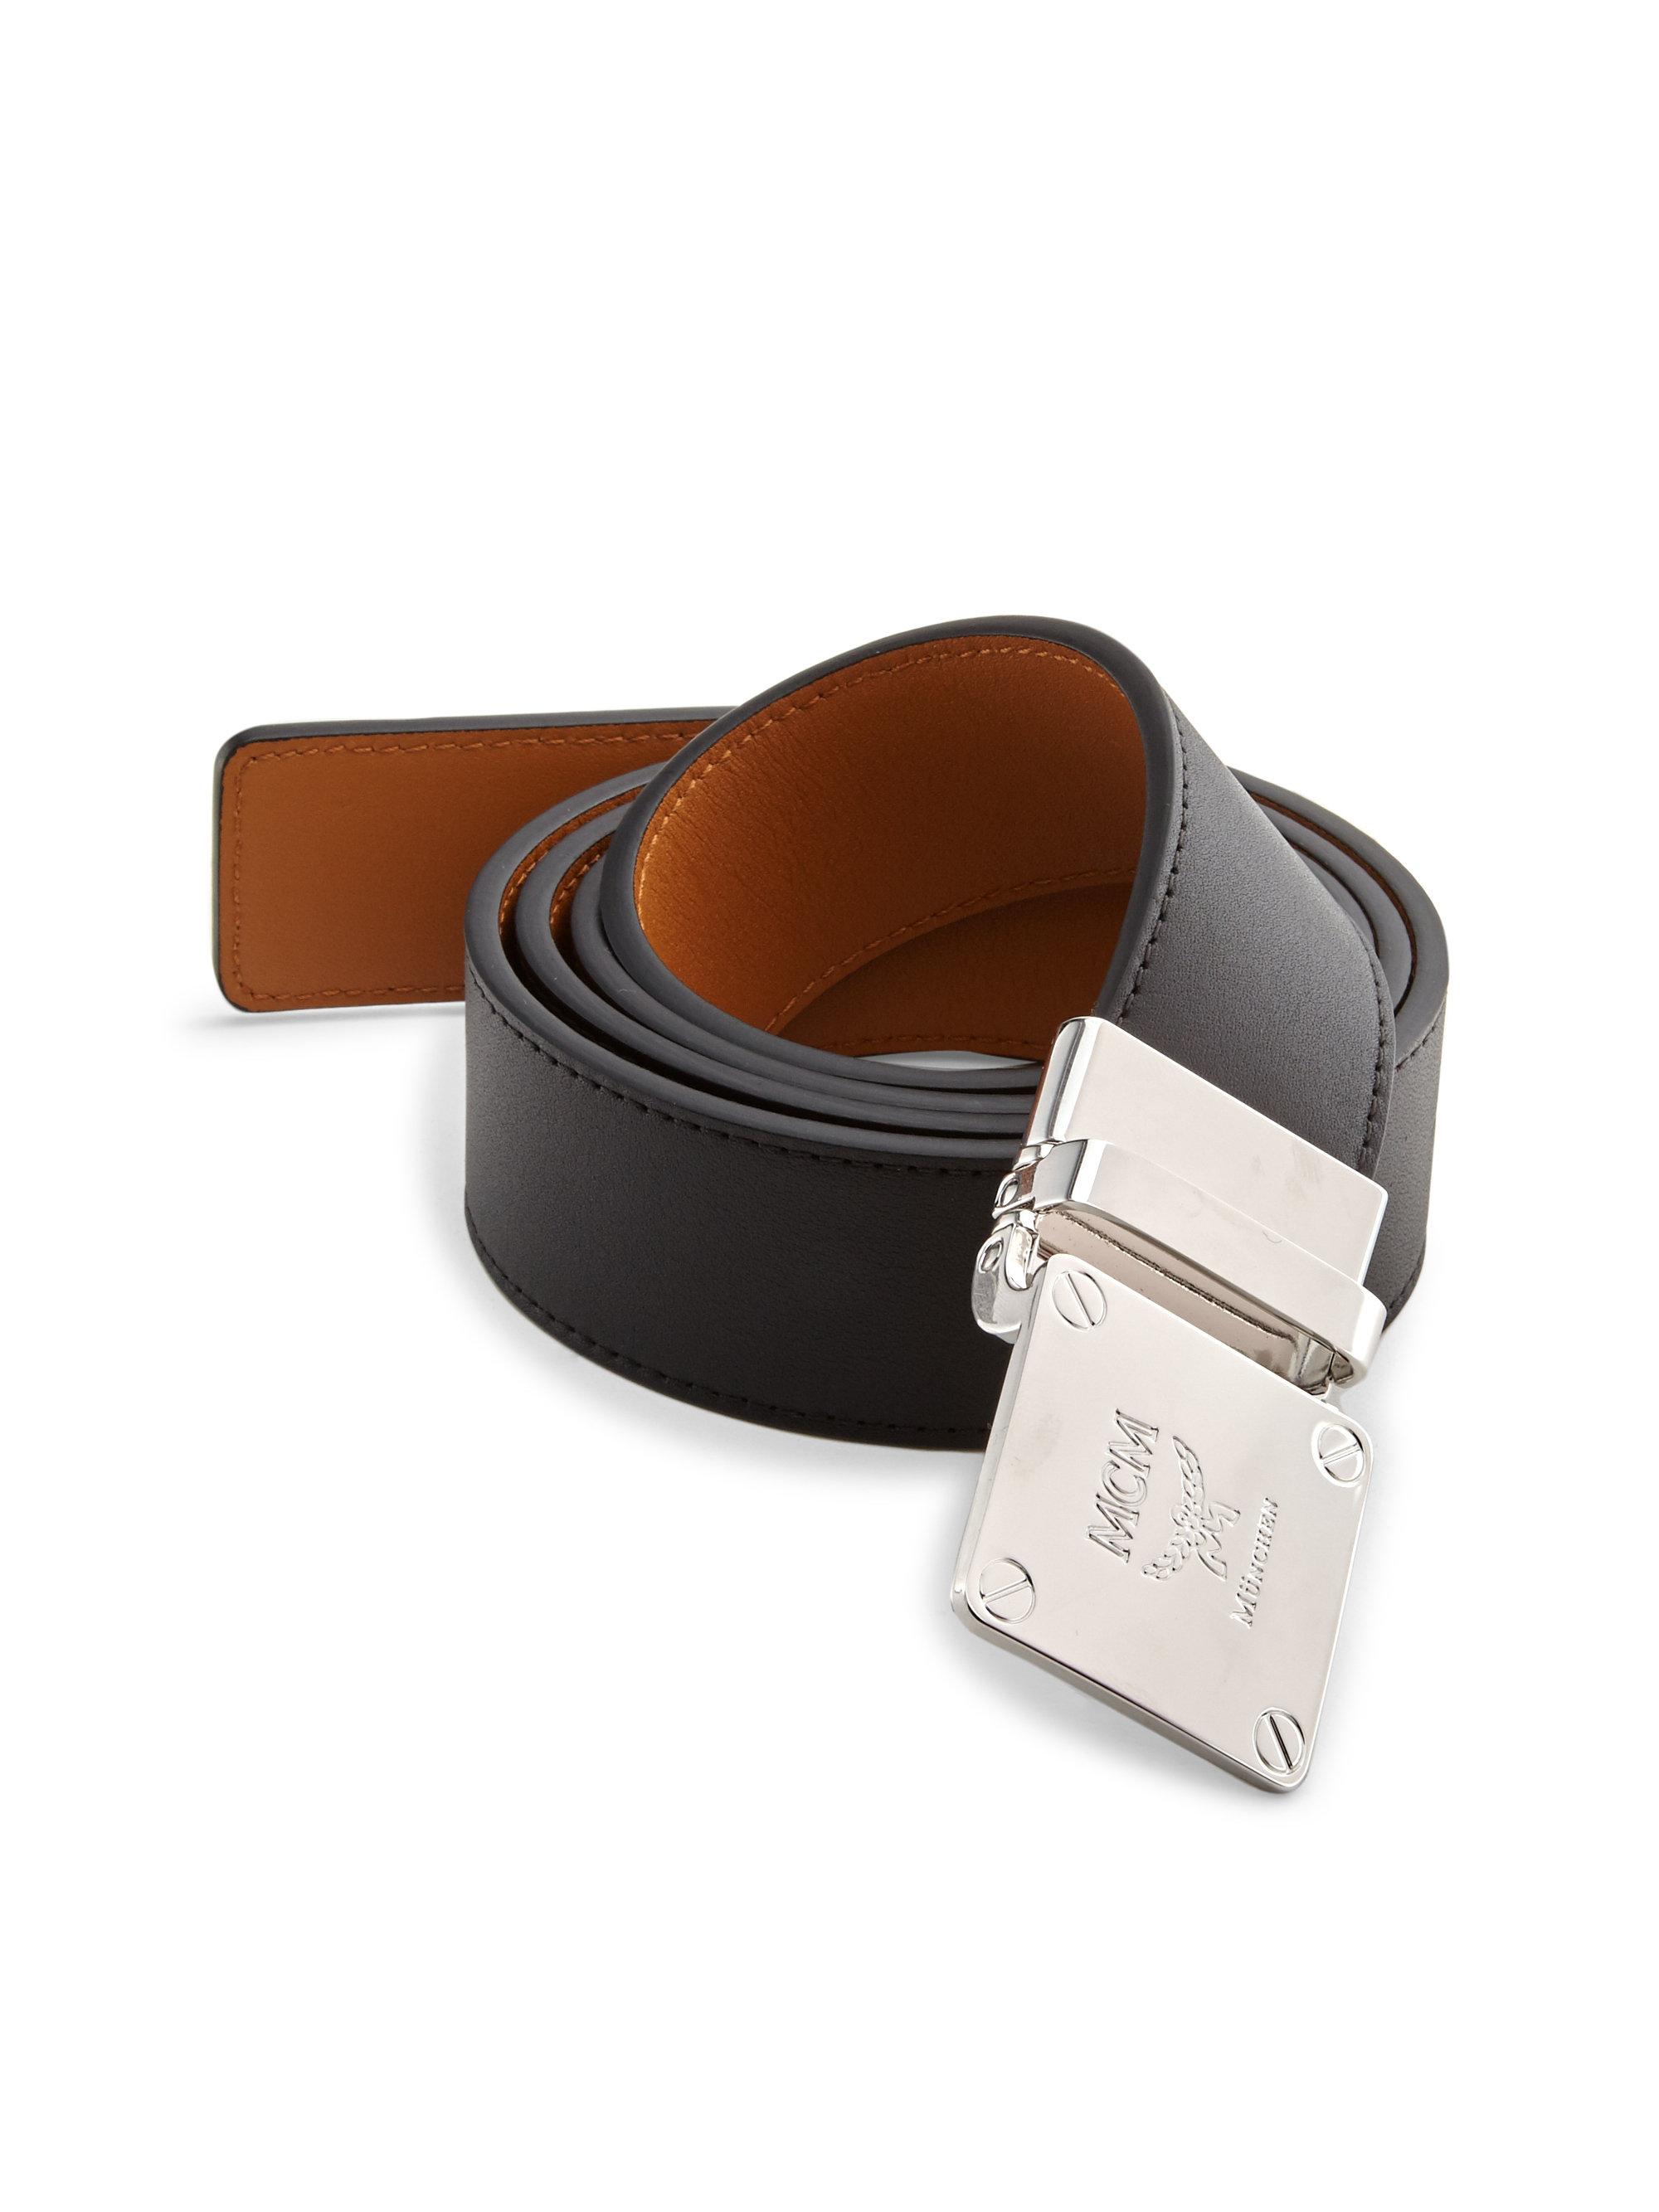 MCM Adjustable Buckle Leather Belt in Black for Men - Lyst